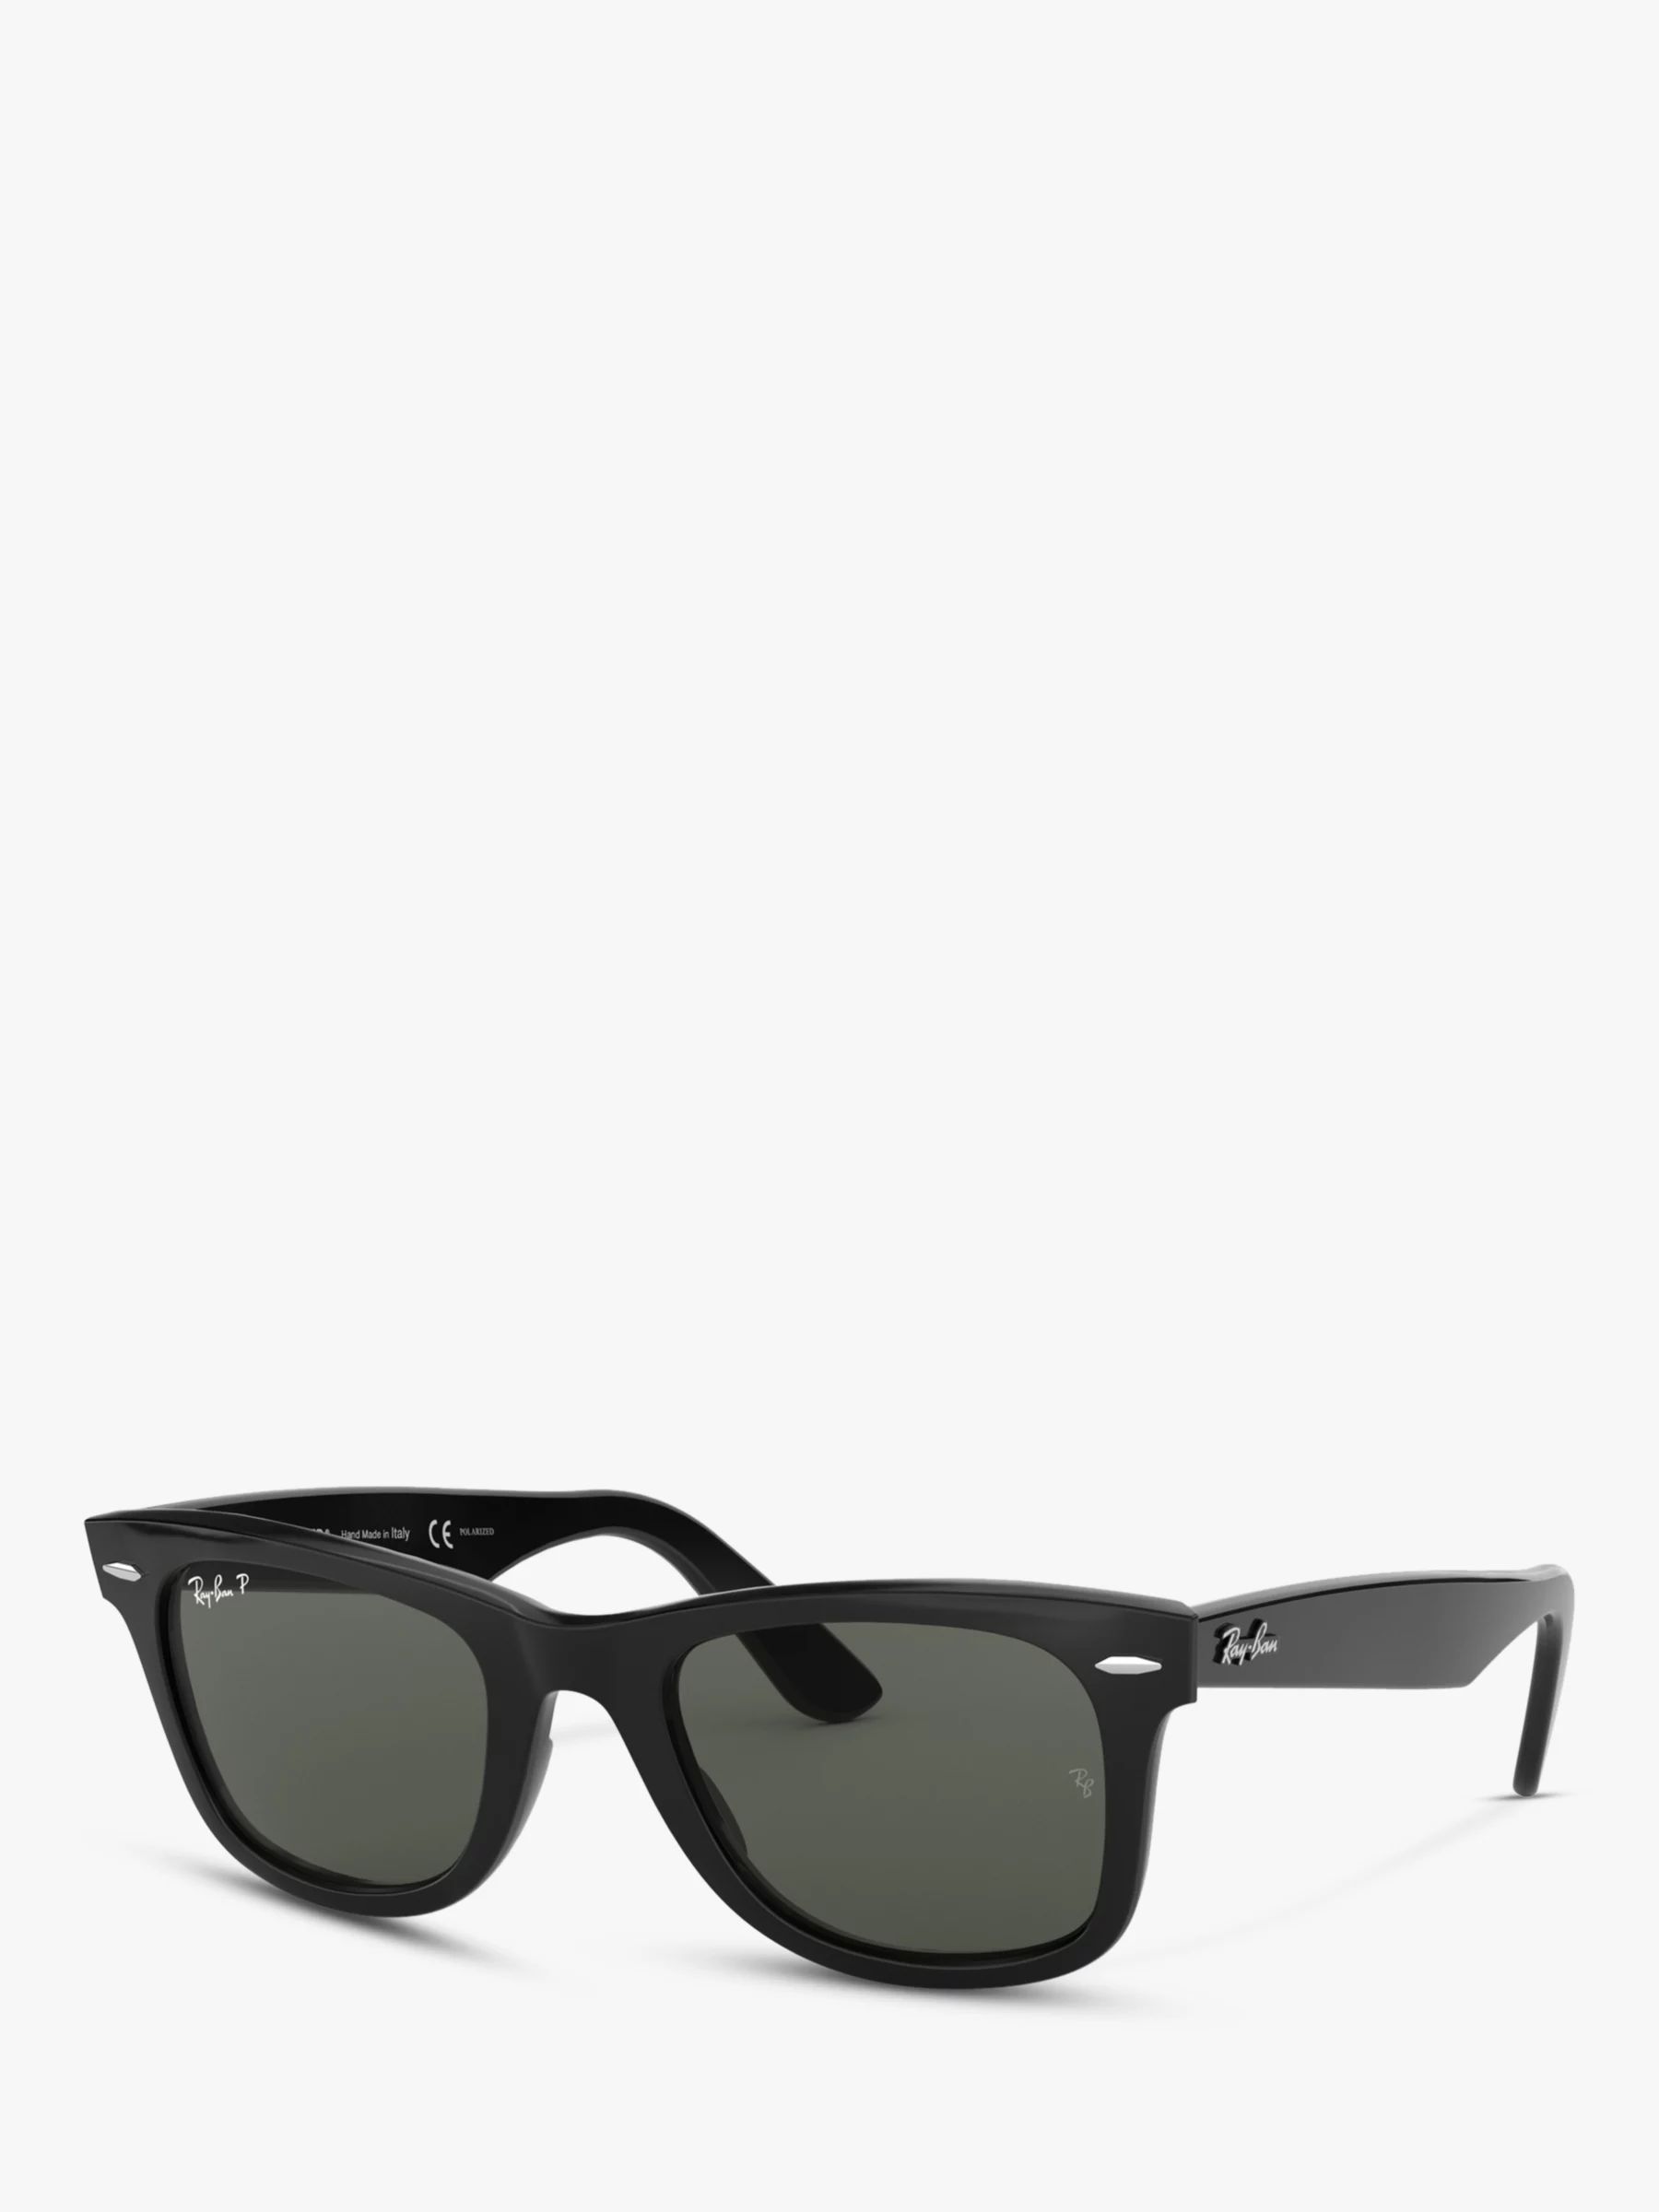 Ray-Ban RB2140 Polarised Wayfarer Sunglasses, Black | John Lewis (UK)